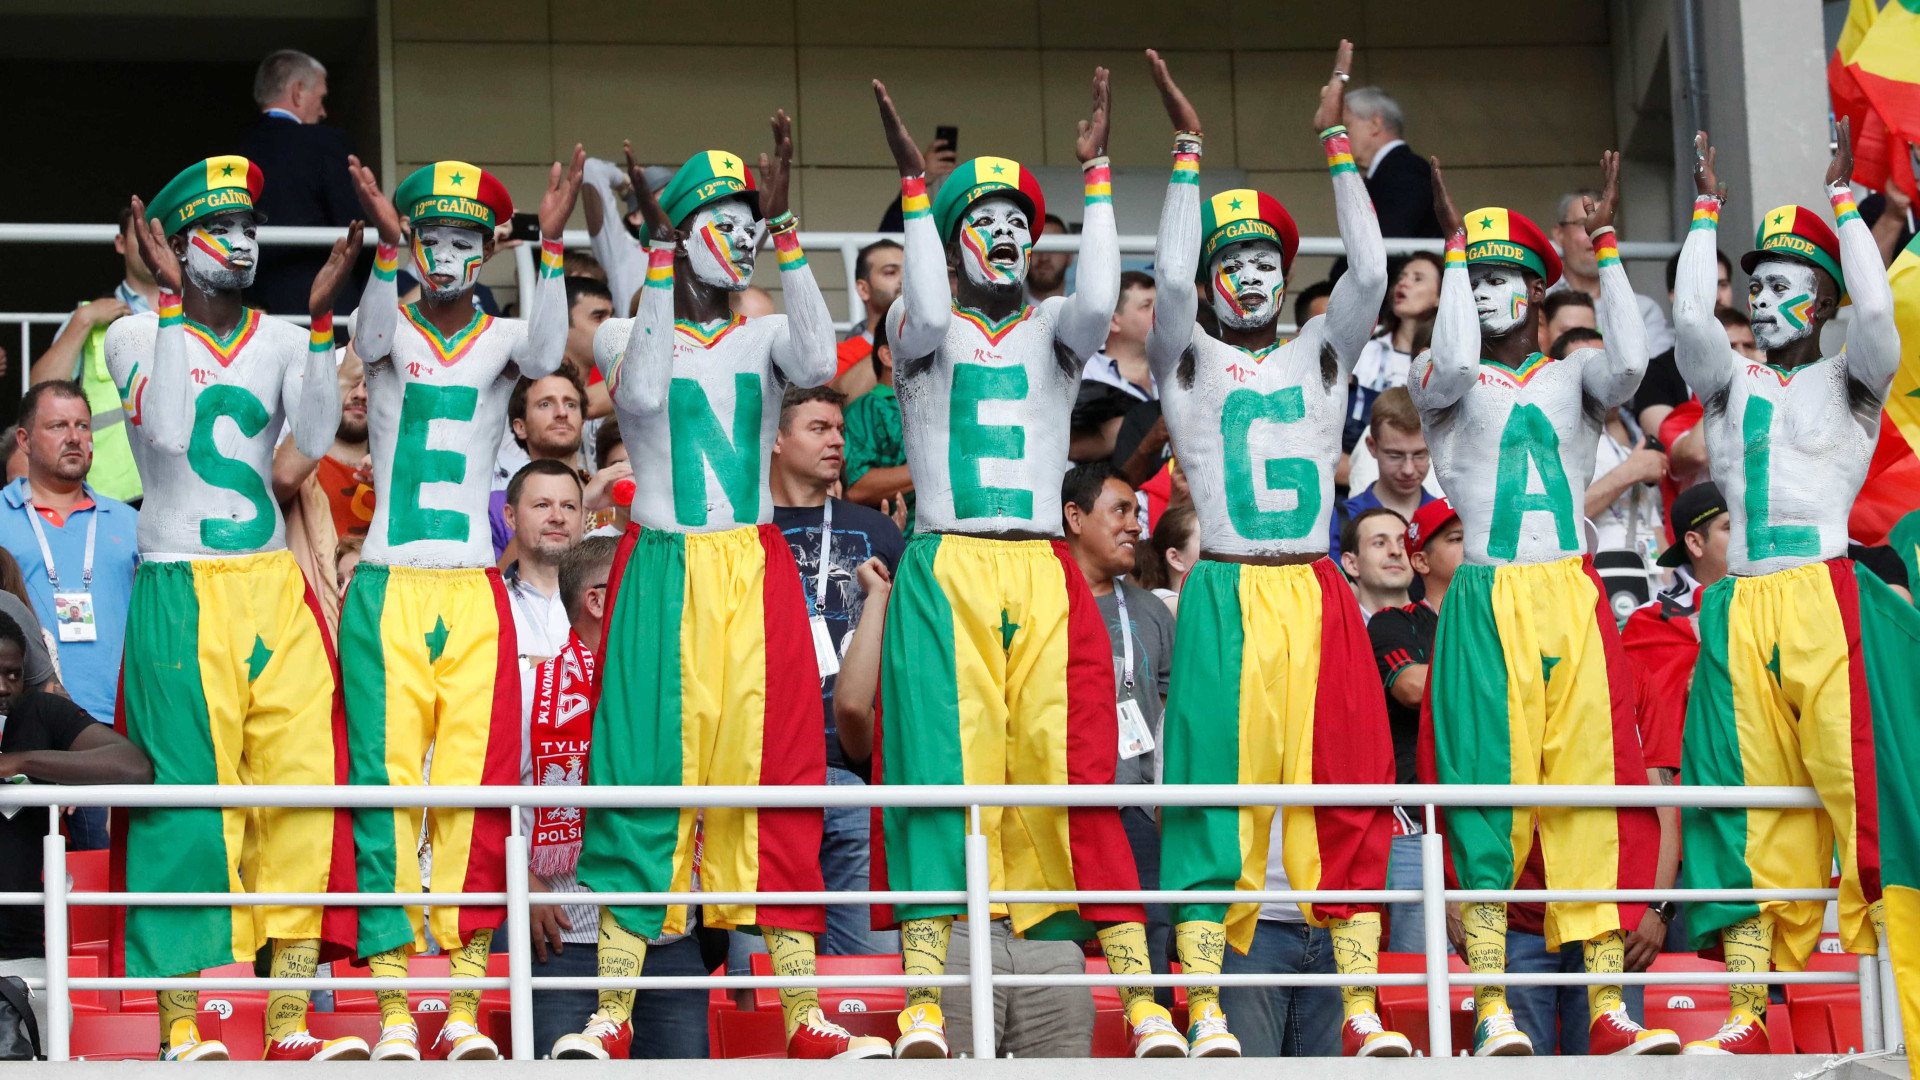 Torcida do Senegal dá show na estreia da seleção na Copa; fotos